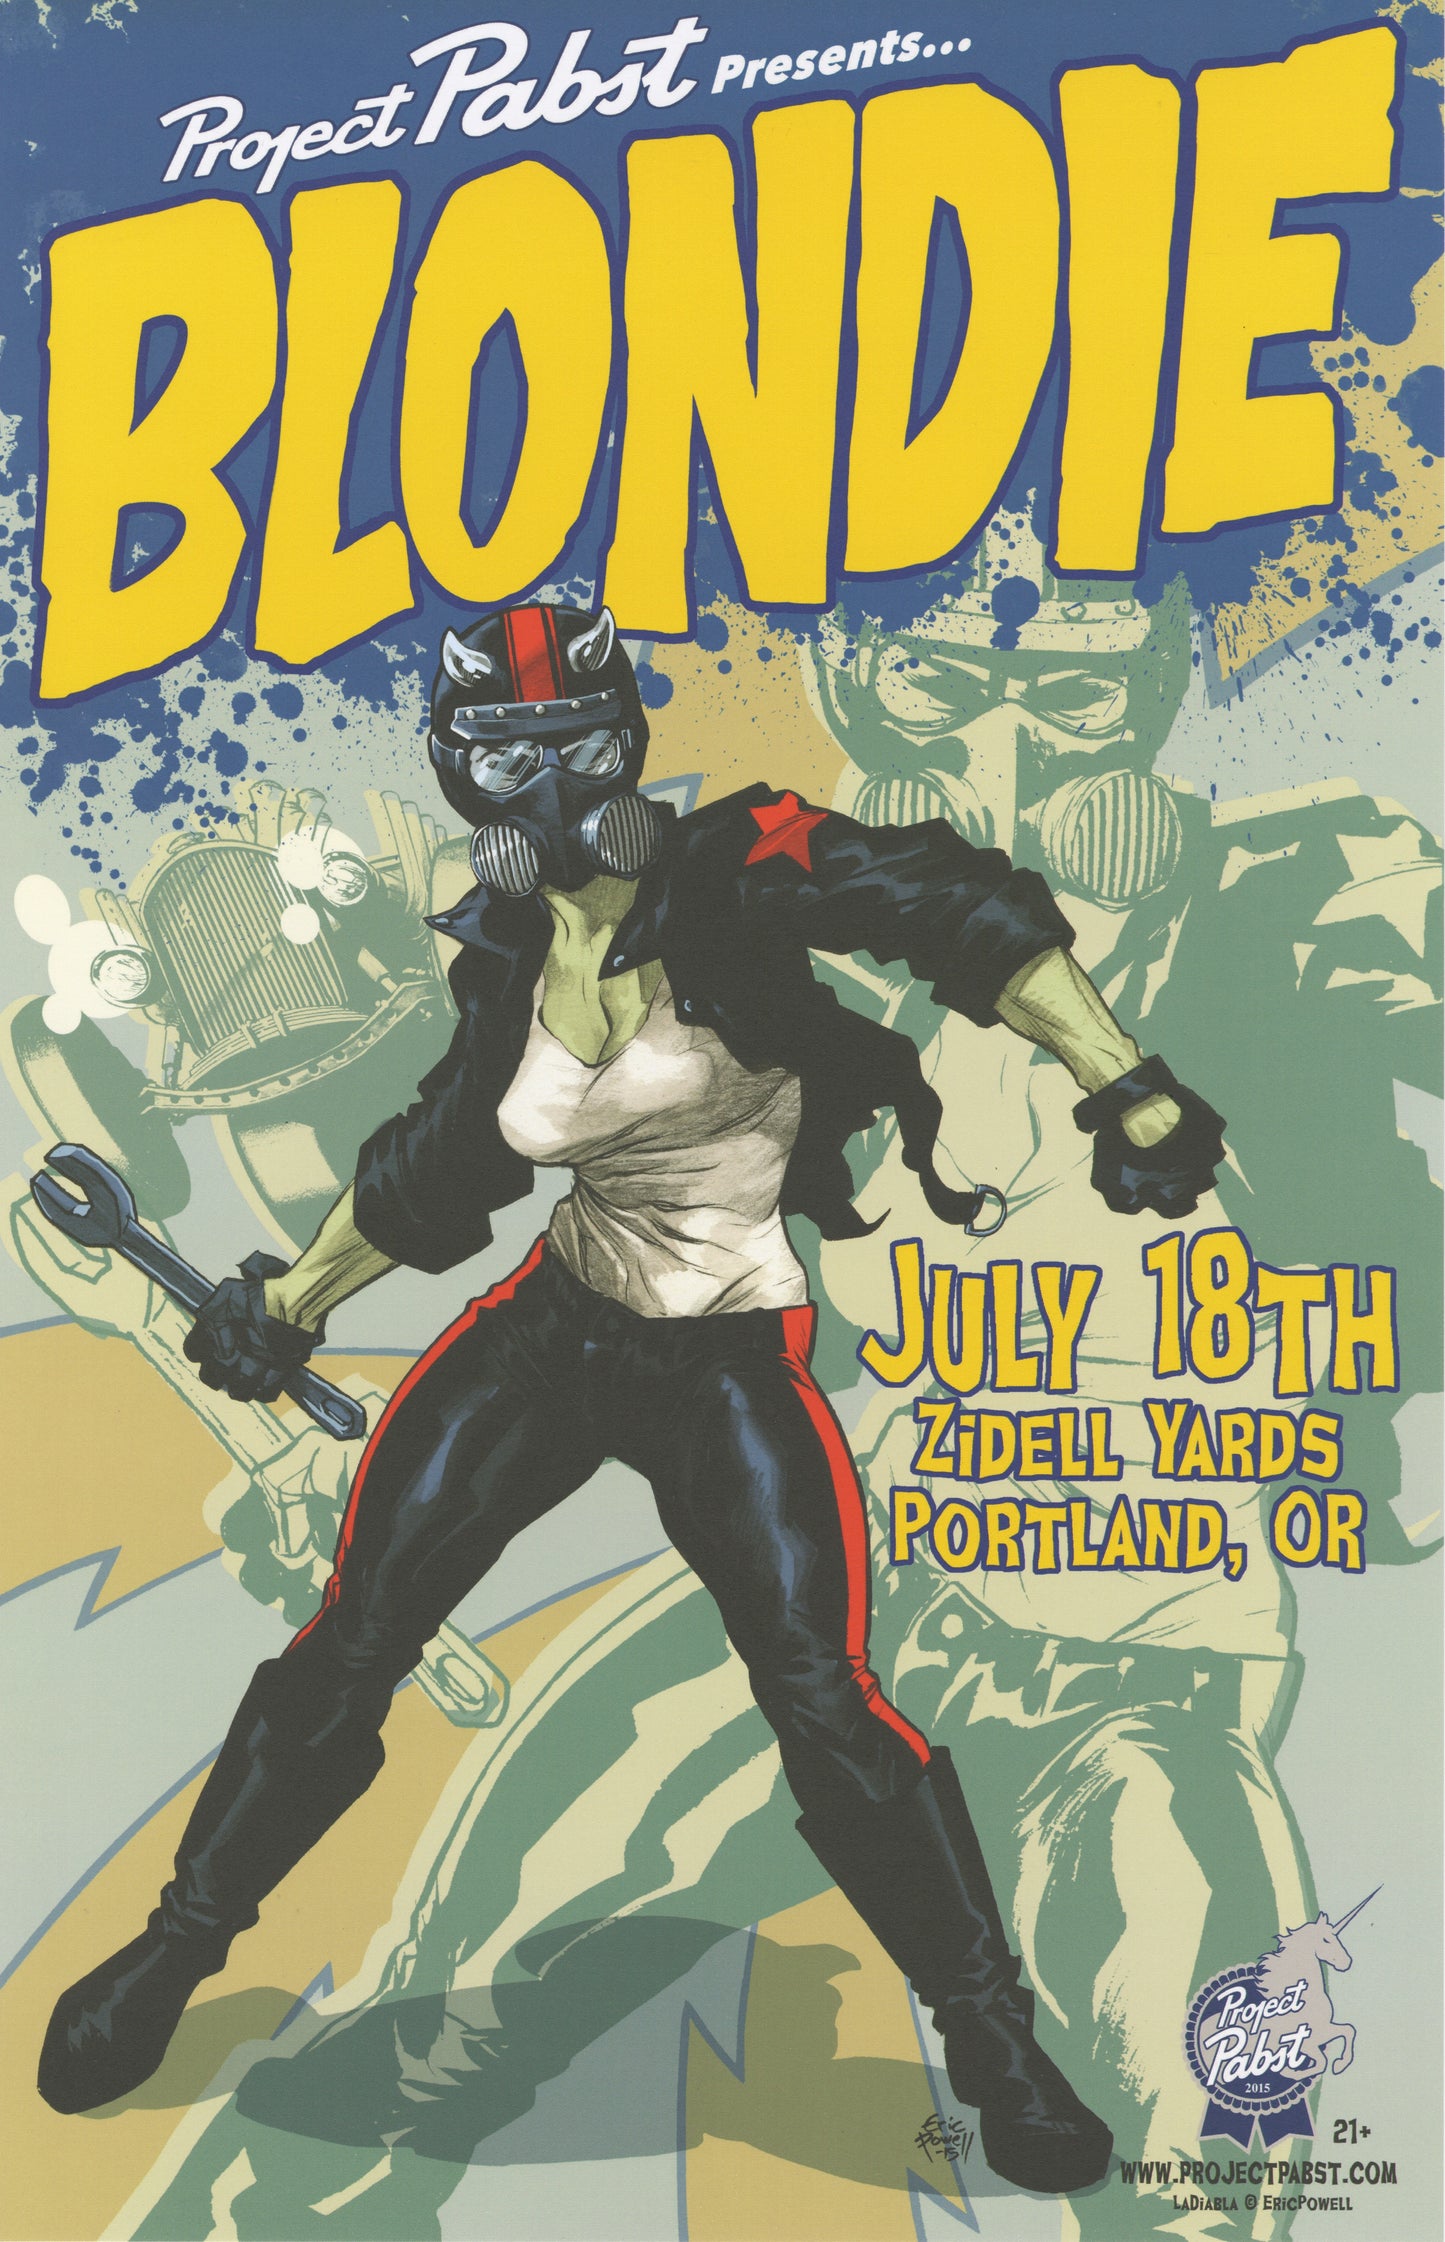 BLONDIE: Project Pabst Blondie Poster (1st La Diabla)